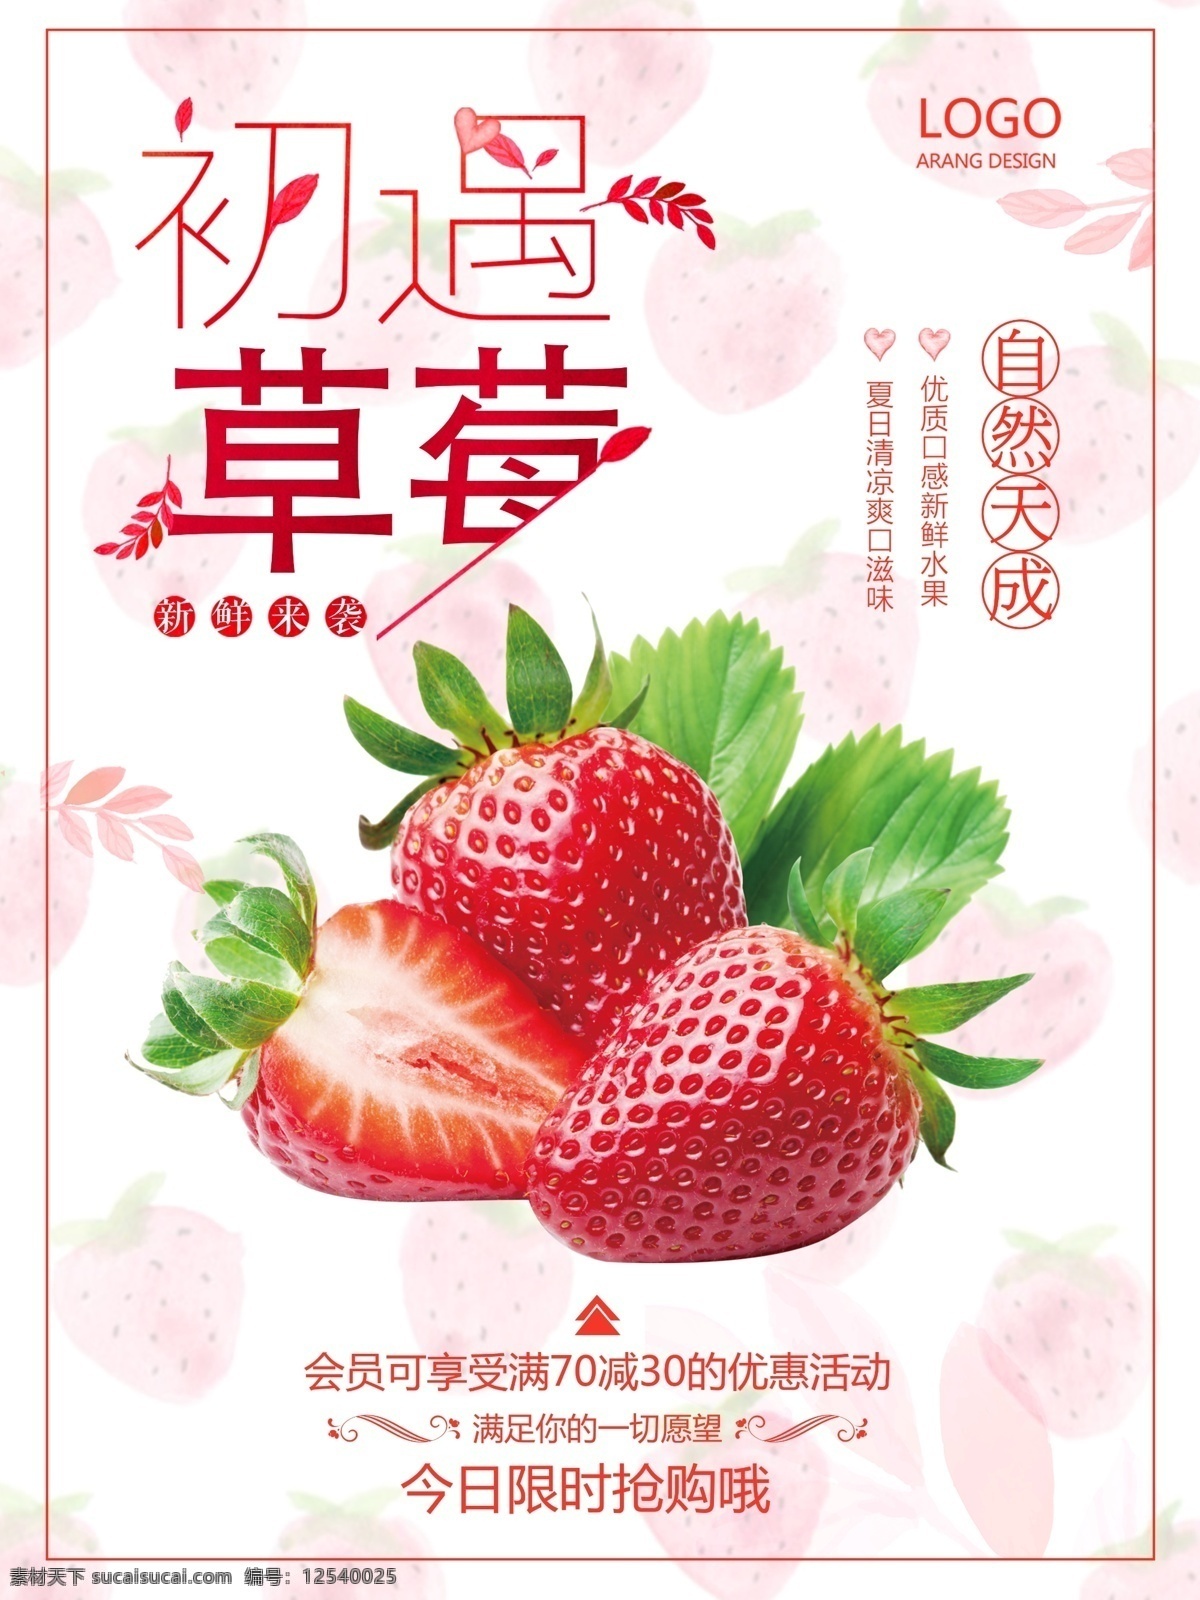 2018 初 遇 草莓 粉红色 促销 草莓海报 初遇 促销海报 店内促销 海报 简约 商场 水果 水果店 新年